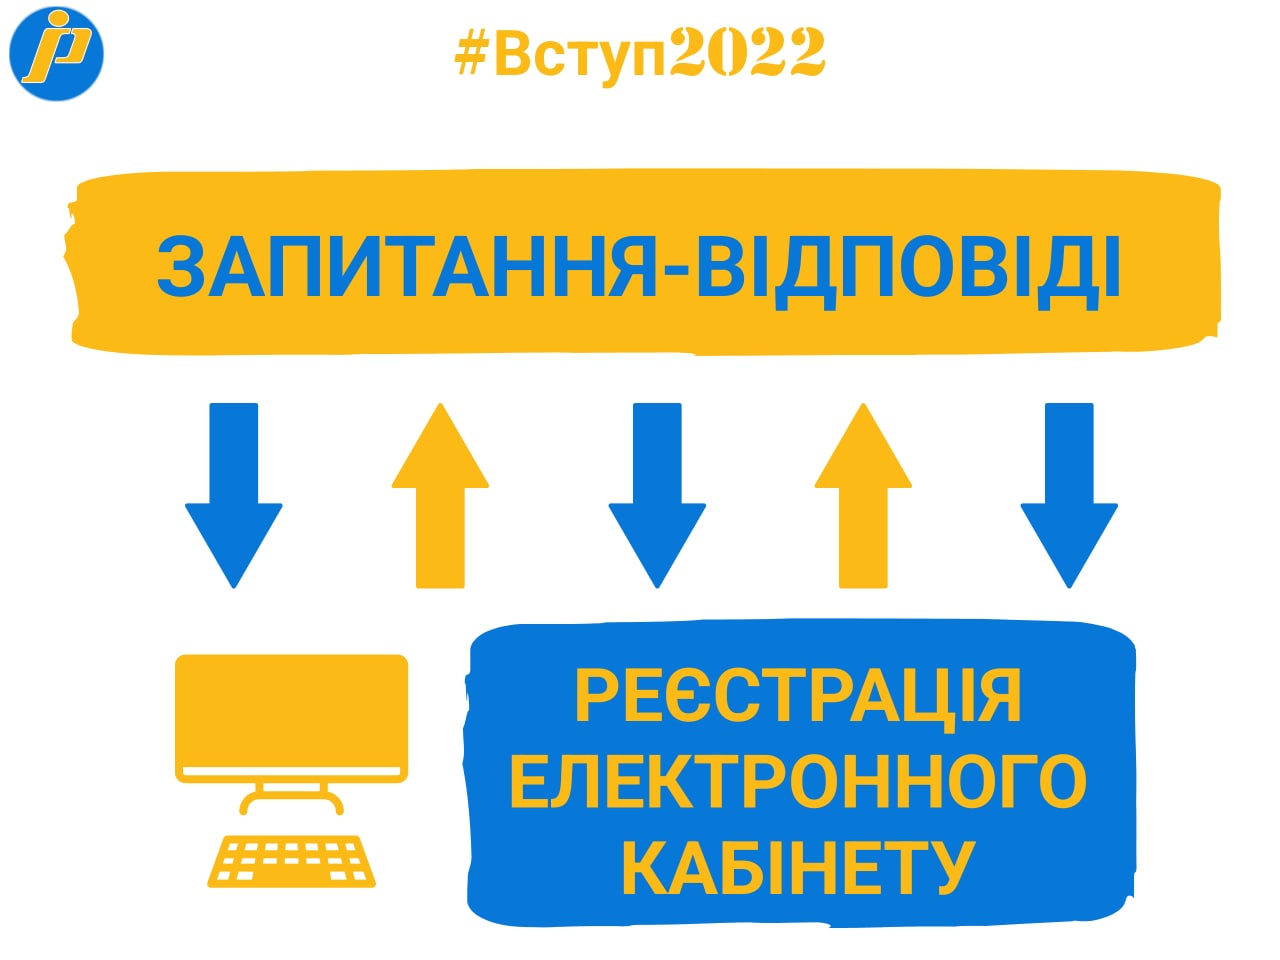 Вступ -2022: поради для успішної реєстрації електронного кабінету вступника